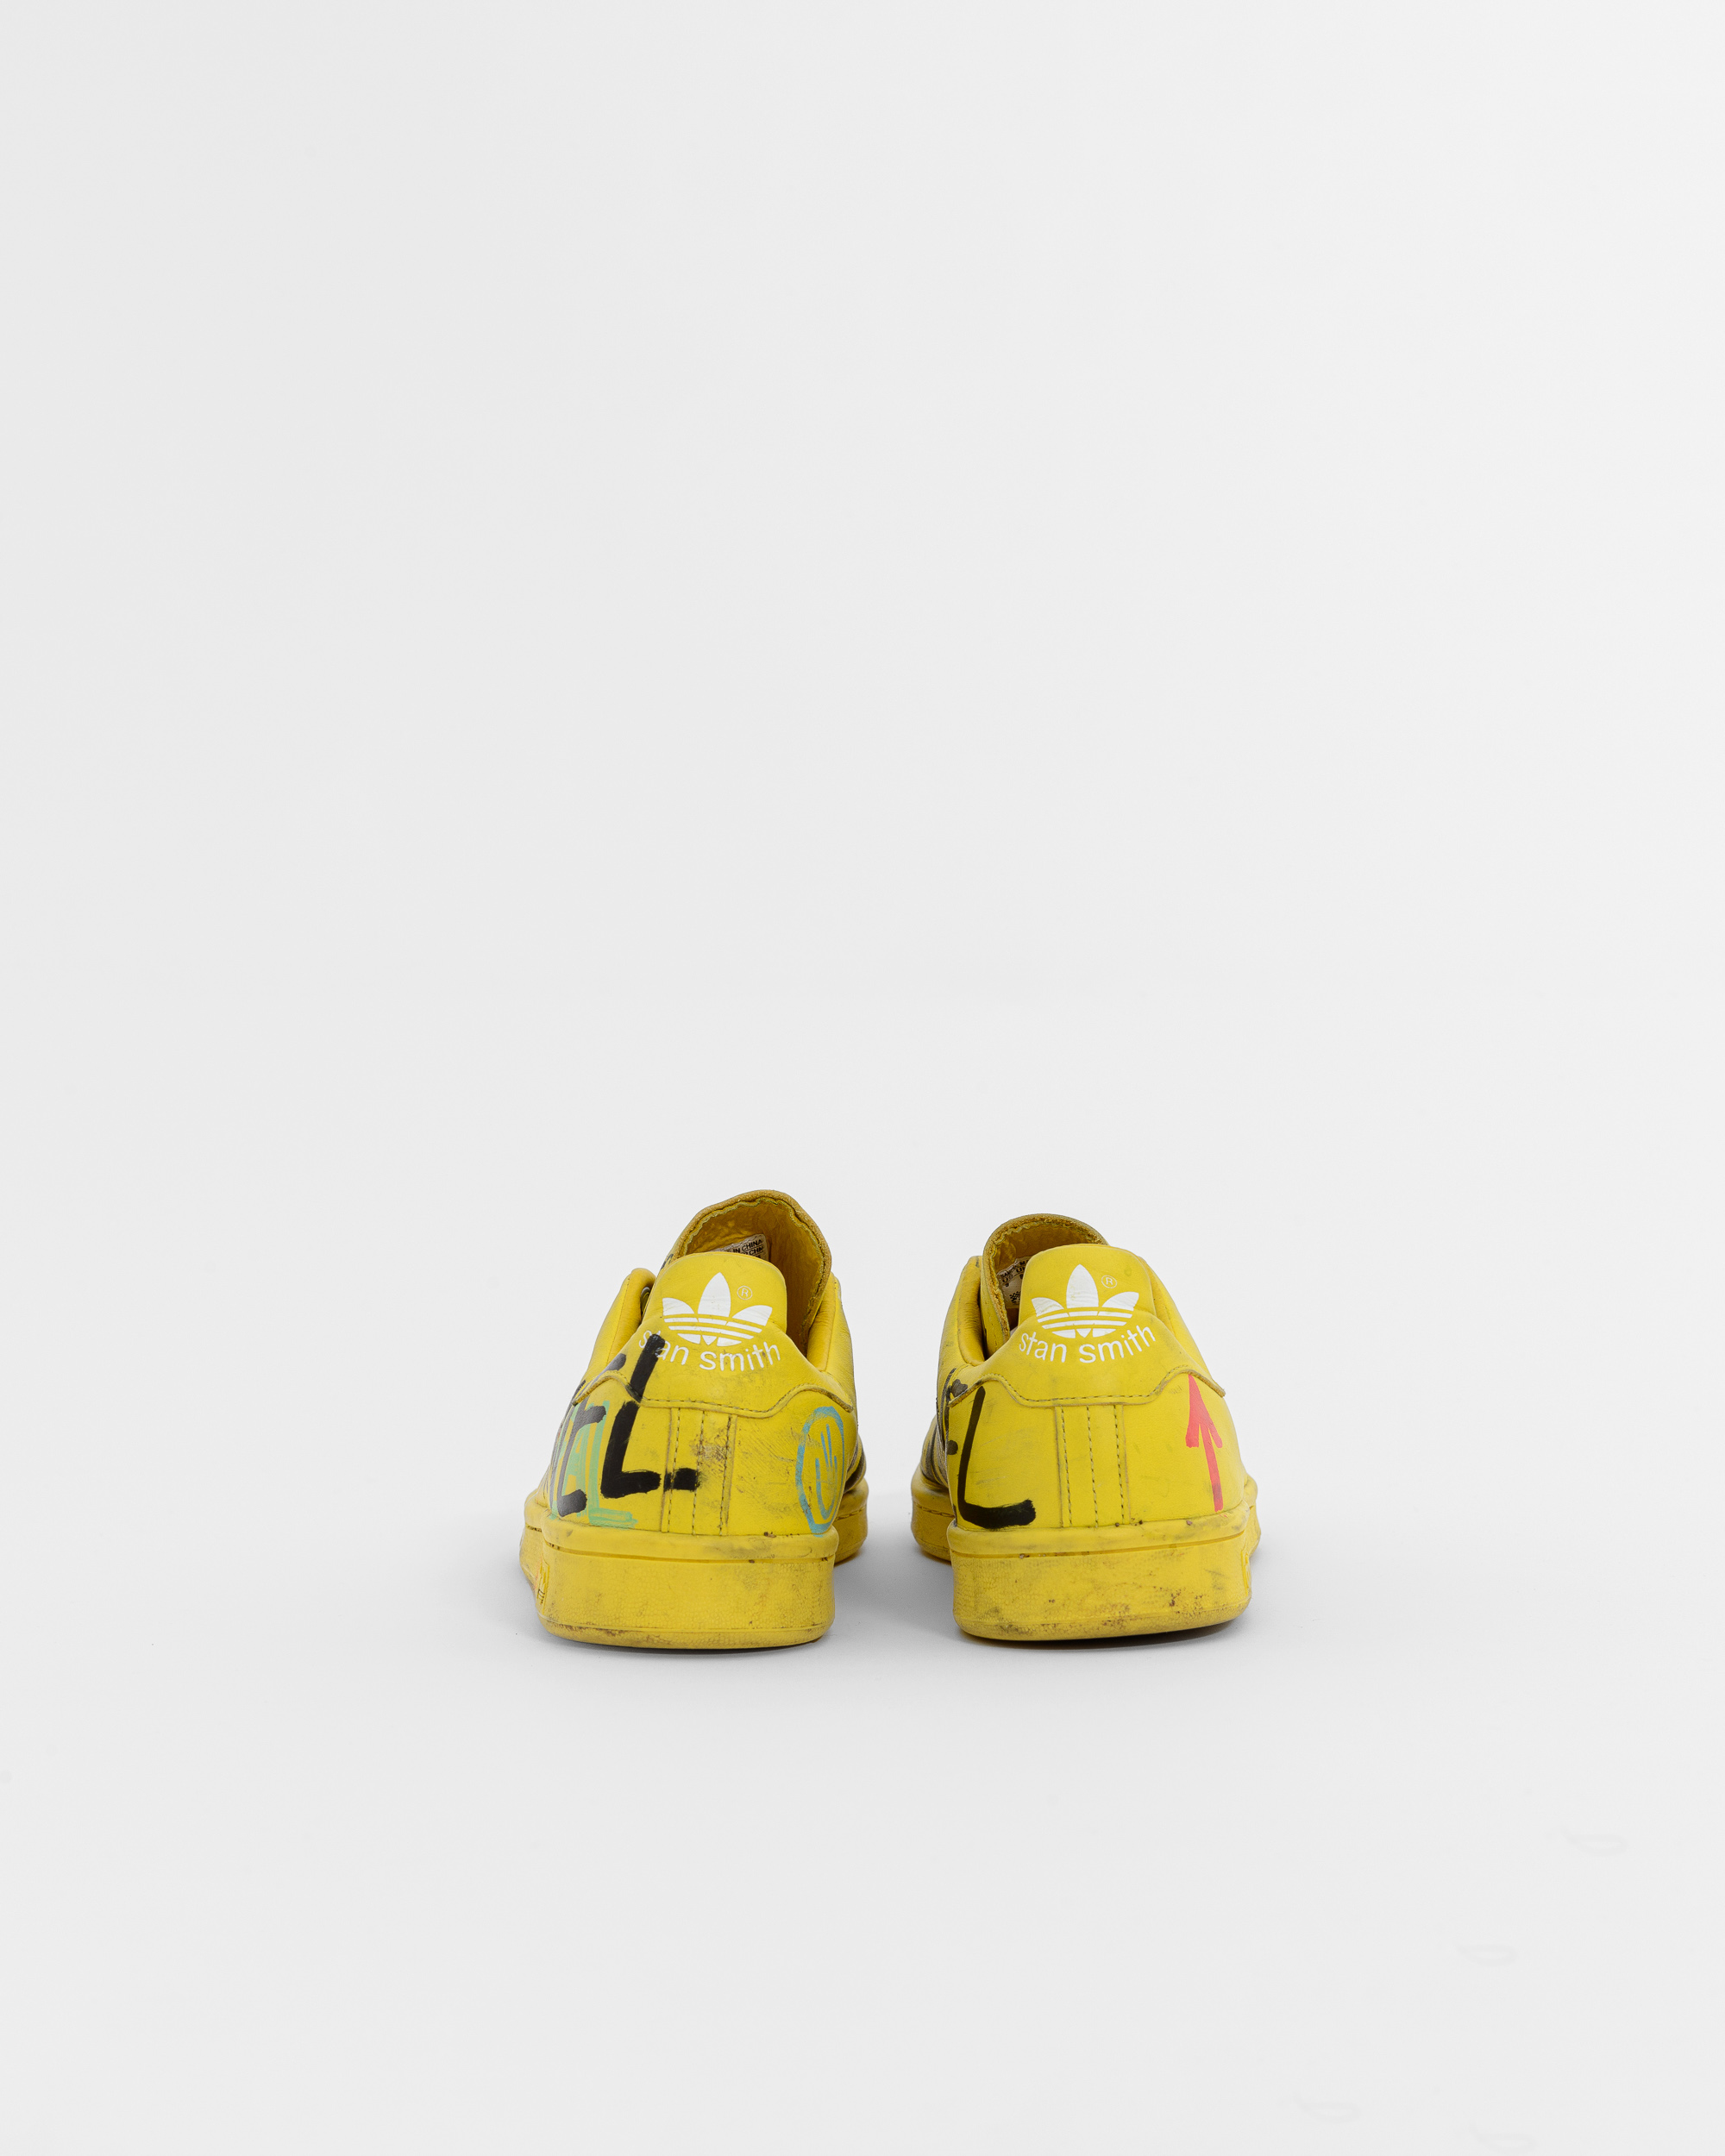 Adidas Men's Shoes Pharrell Williams Hu Holi Stan Smith Yellow White size  8.5